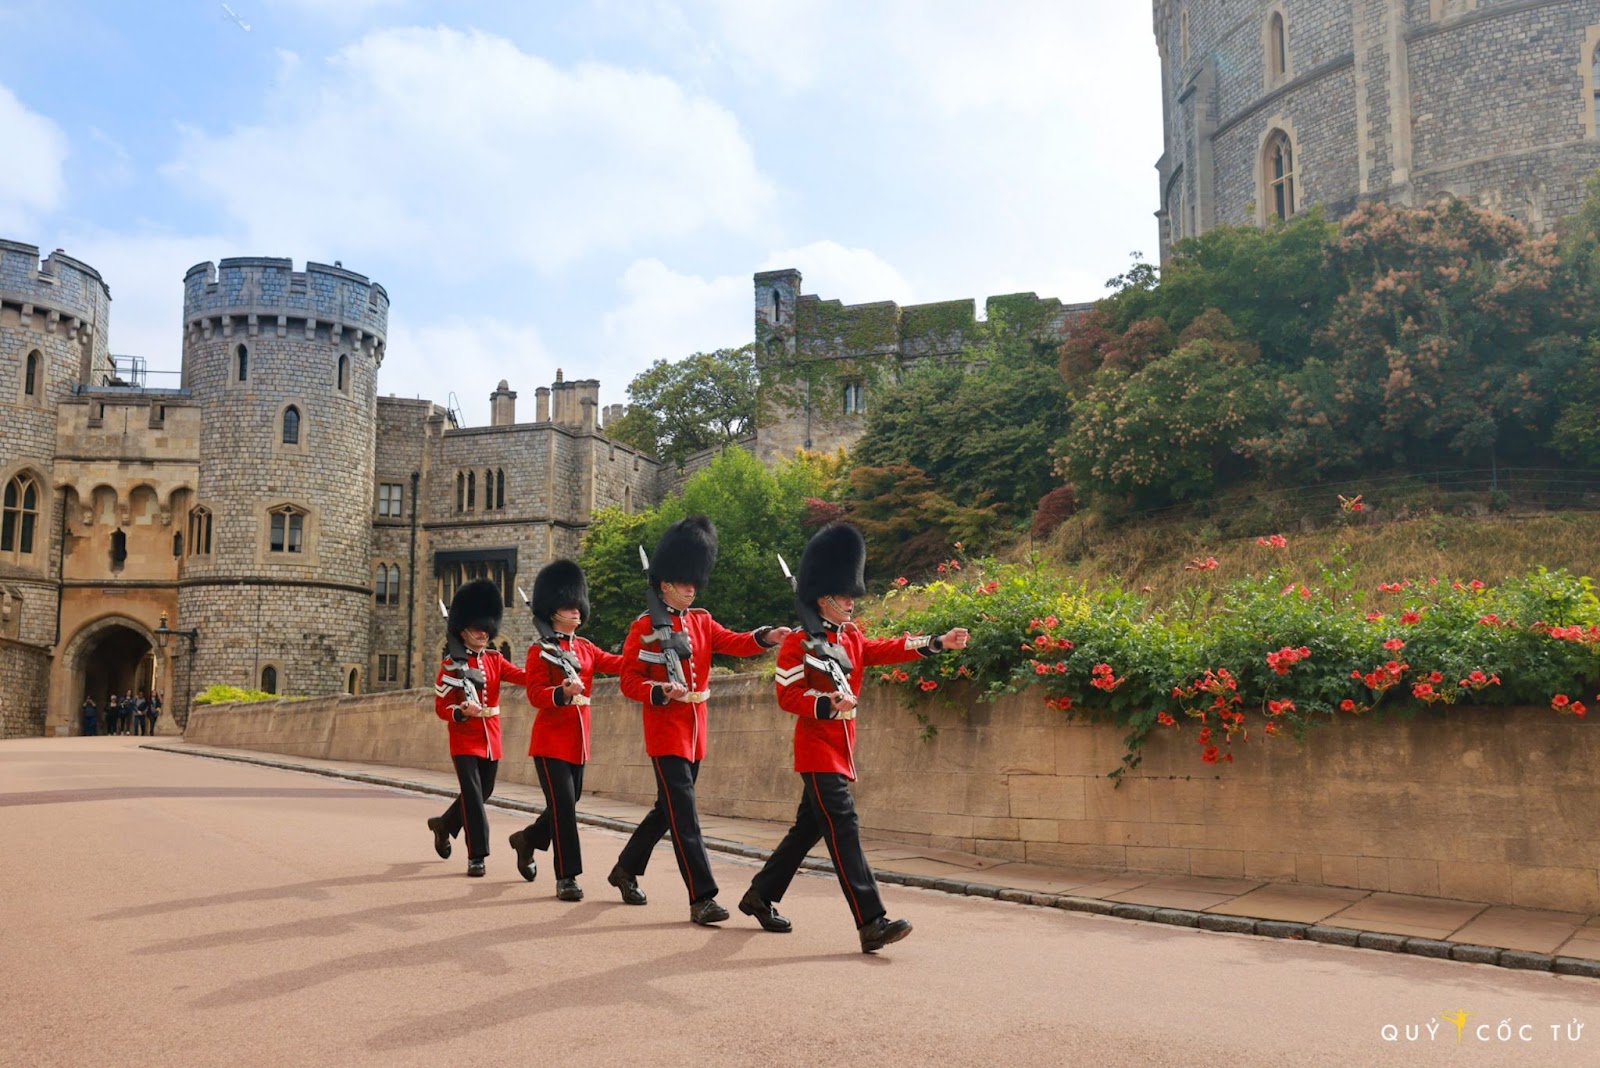 Xem lính Hoàng gia Anh đổi ca gác ấn tượng tại lâu đài 1.000 năm tuổi - 8